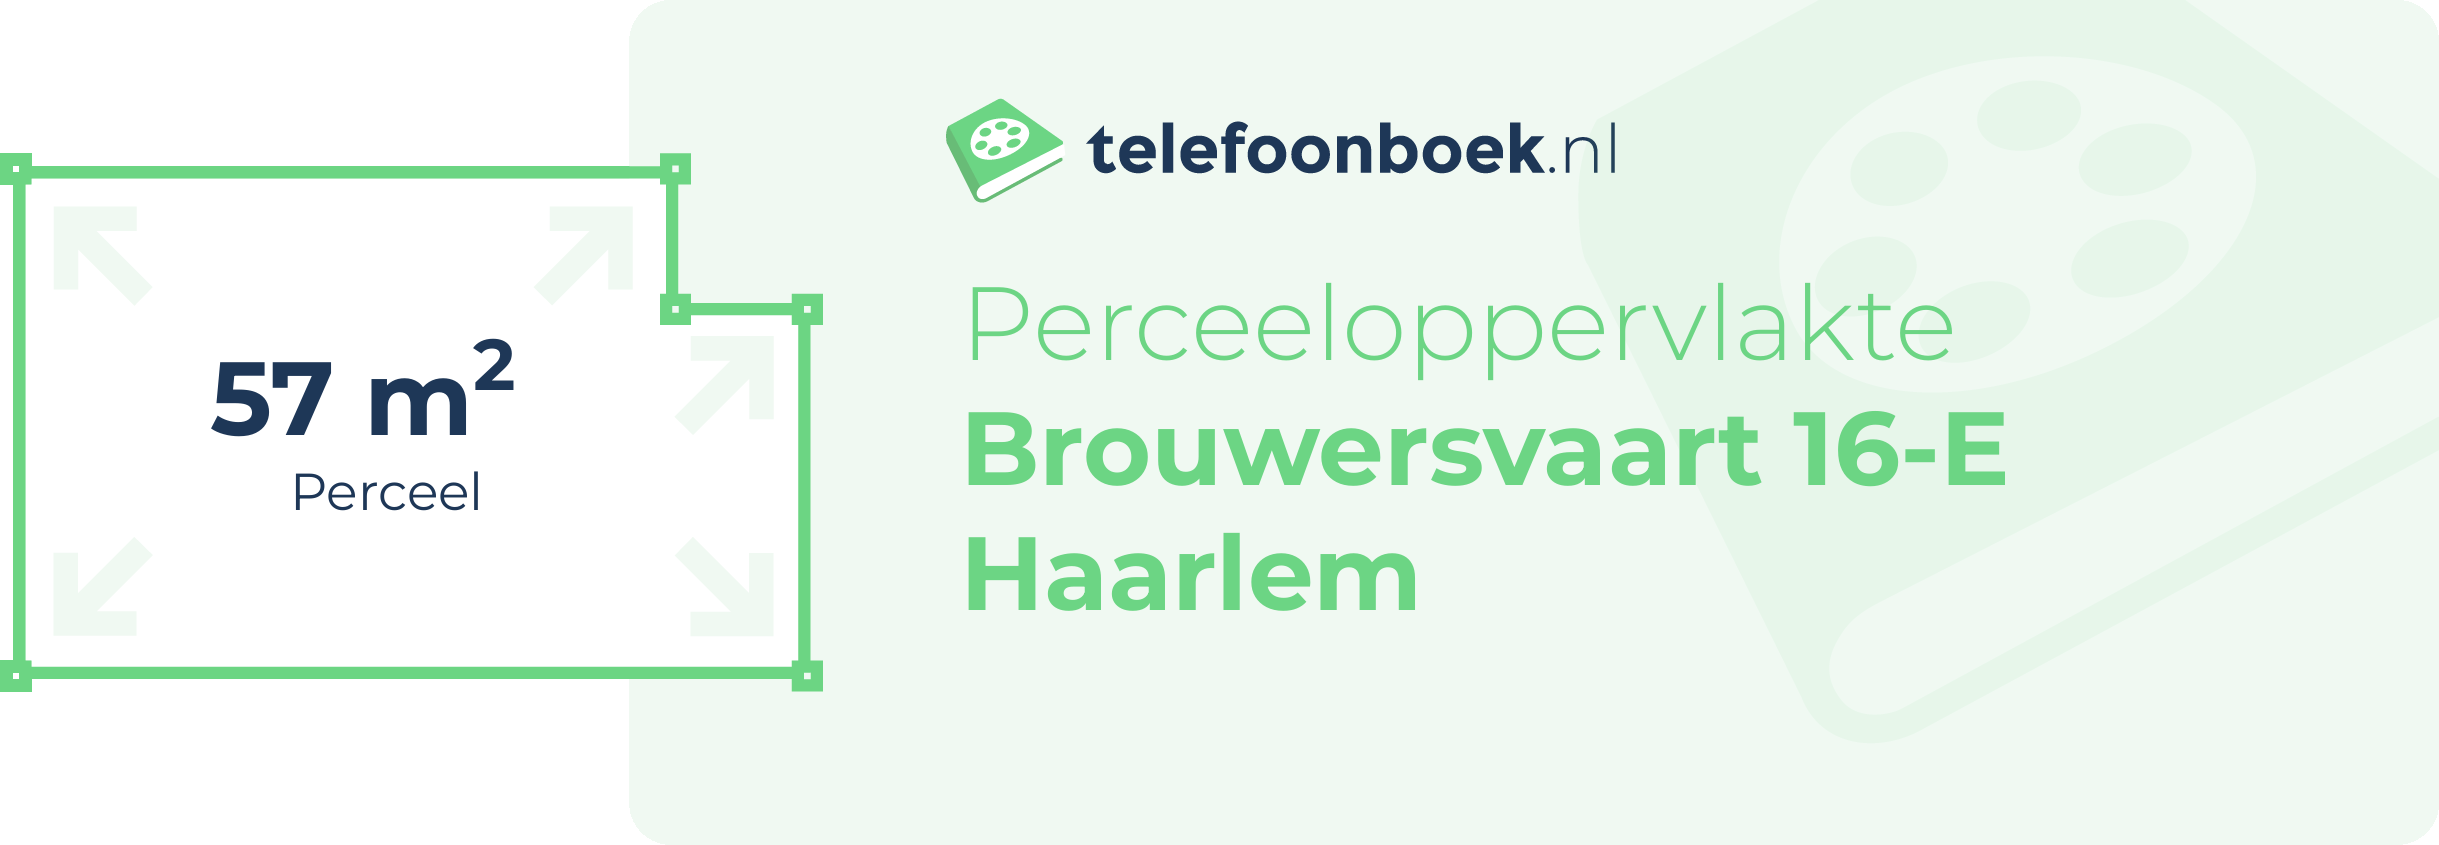 Perceeloppervlakte Brouwersvaart 16-E Haarlem